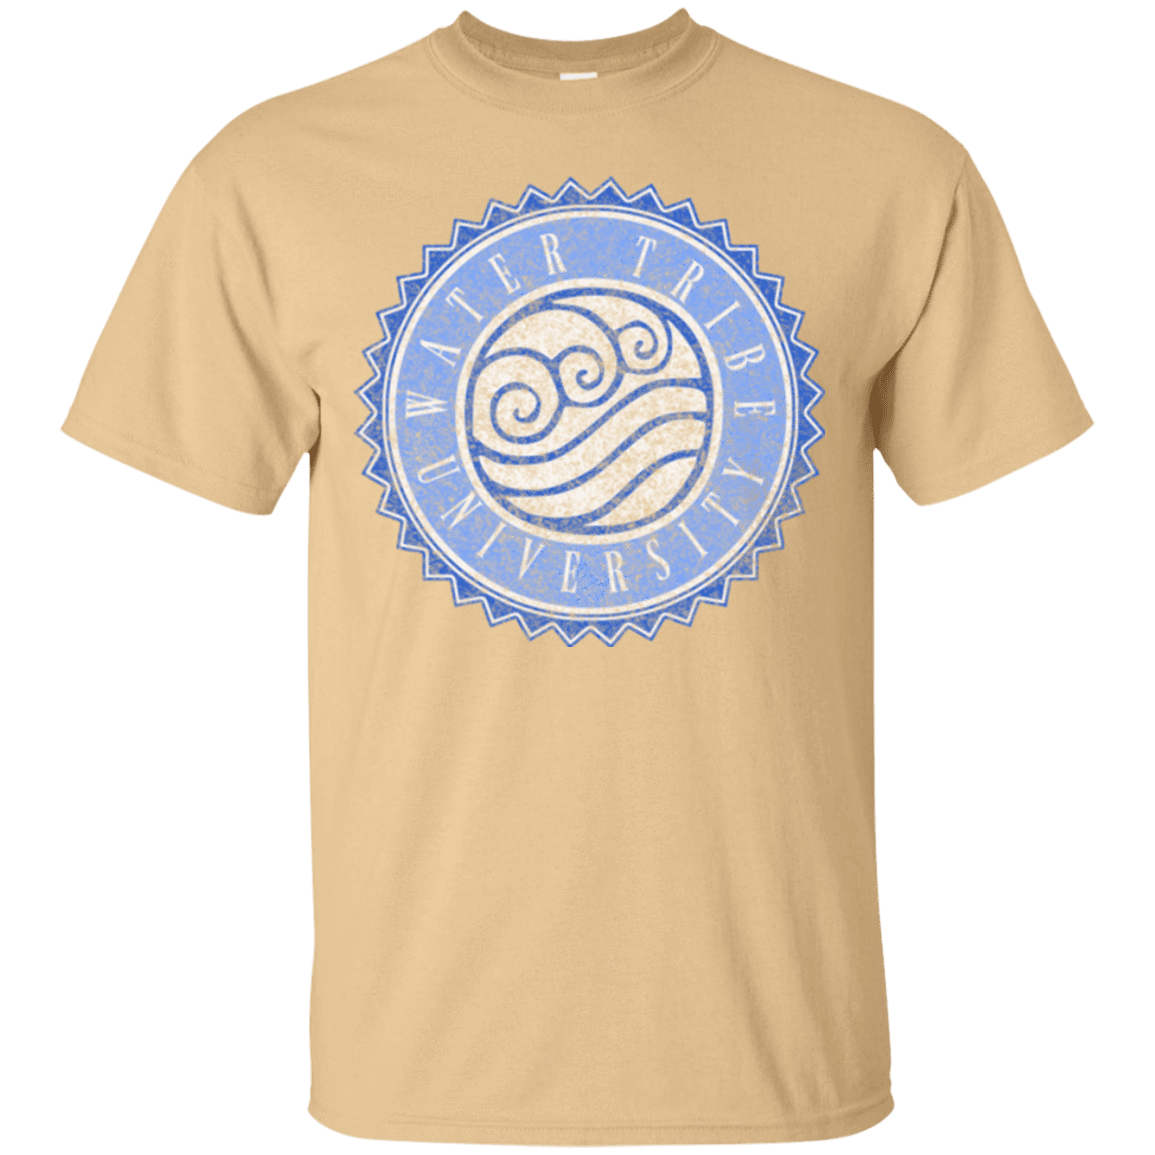 T-Shirts Vegas Gold / Small Water tribe university T-Shirt